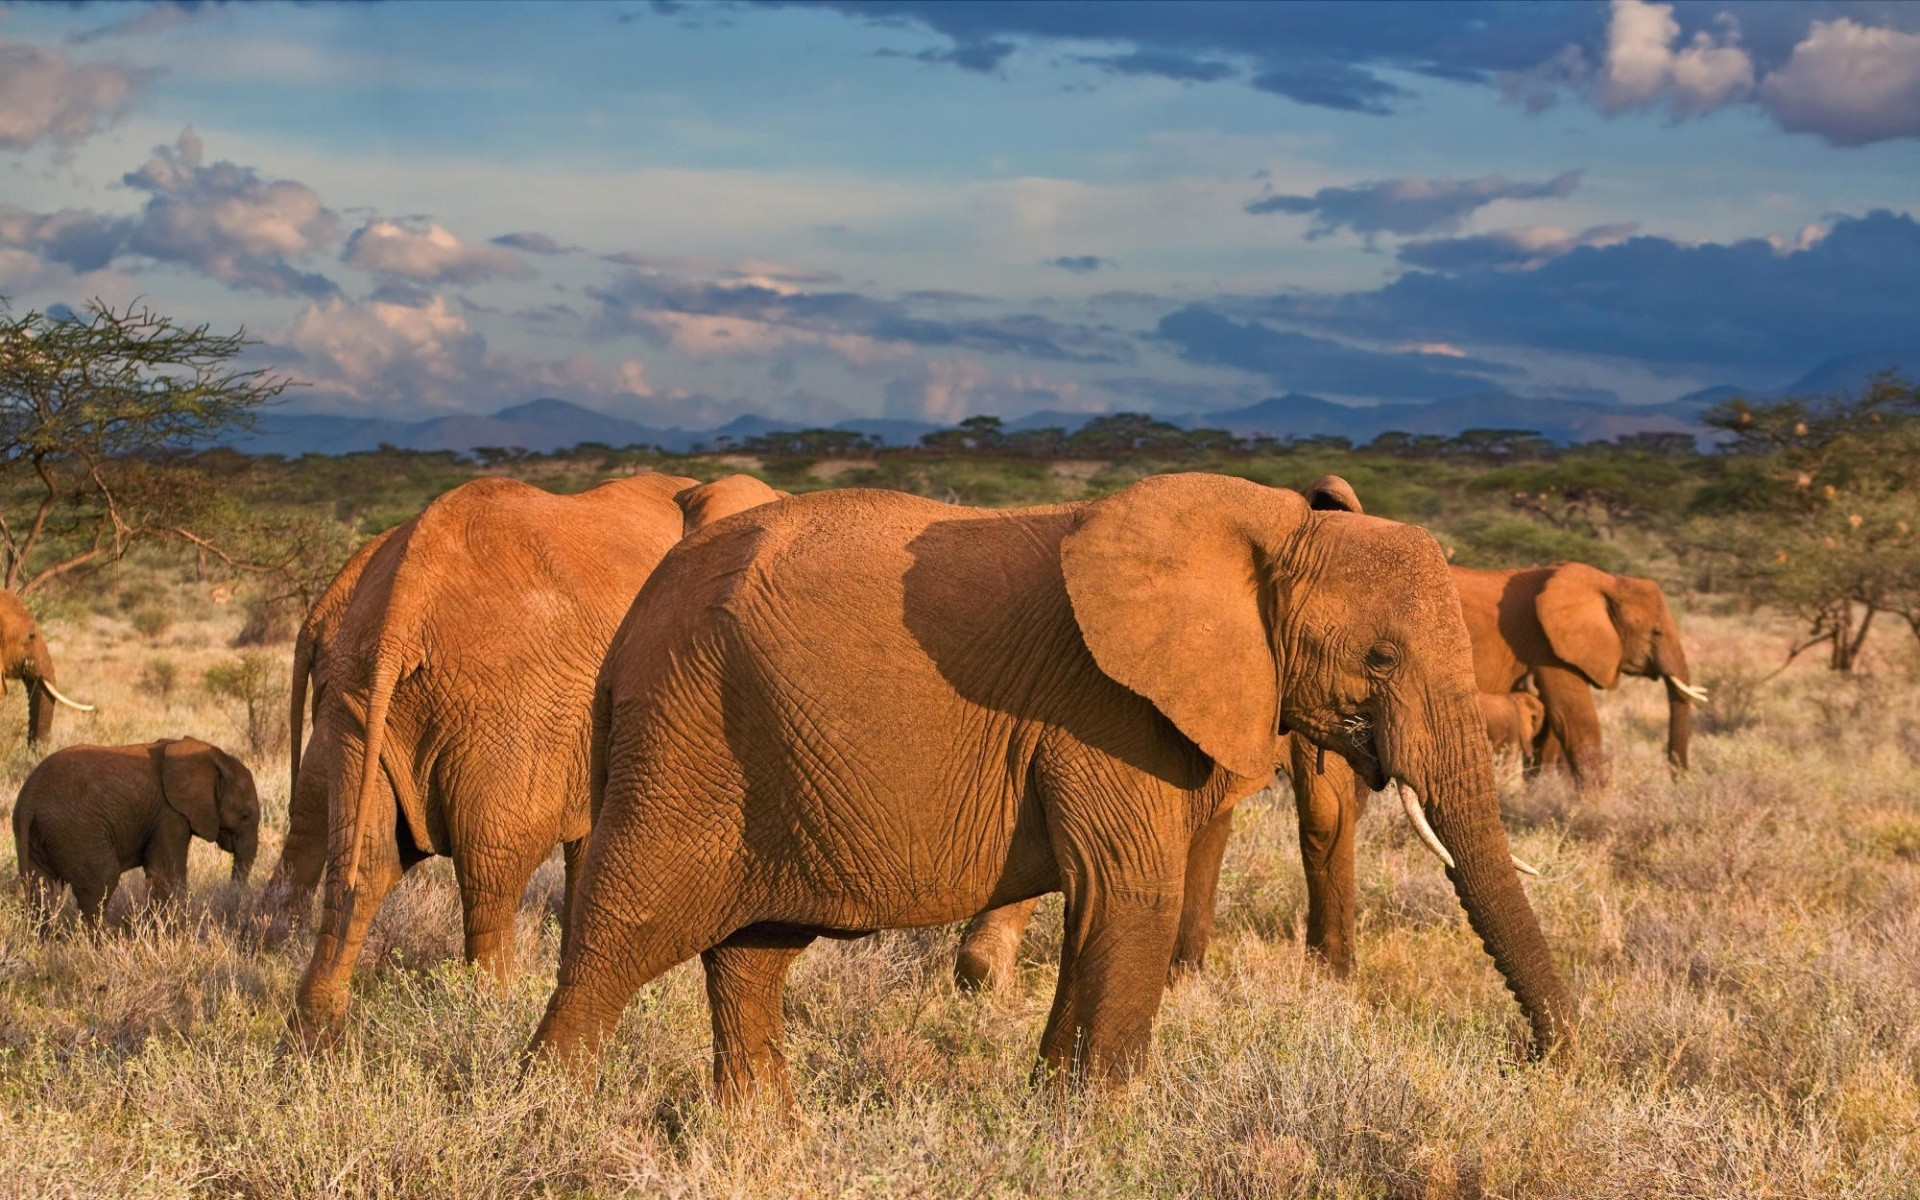 животные млекопитающее дикой природы пастбища слон трава животное сафари стадо саванна дикий африканский слон на открытом воздухе природа